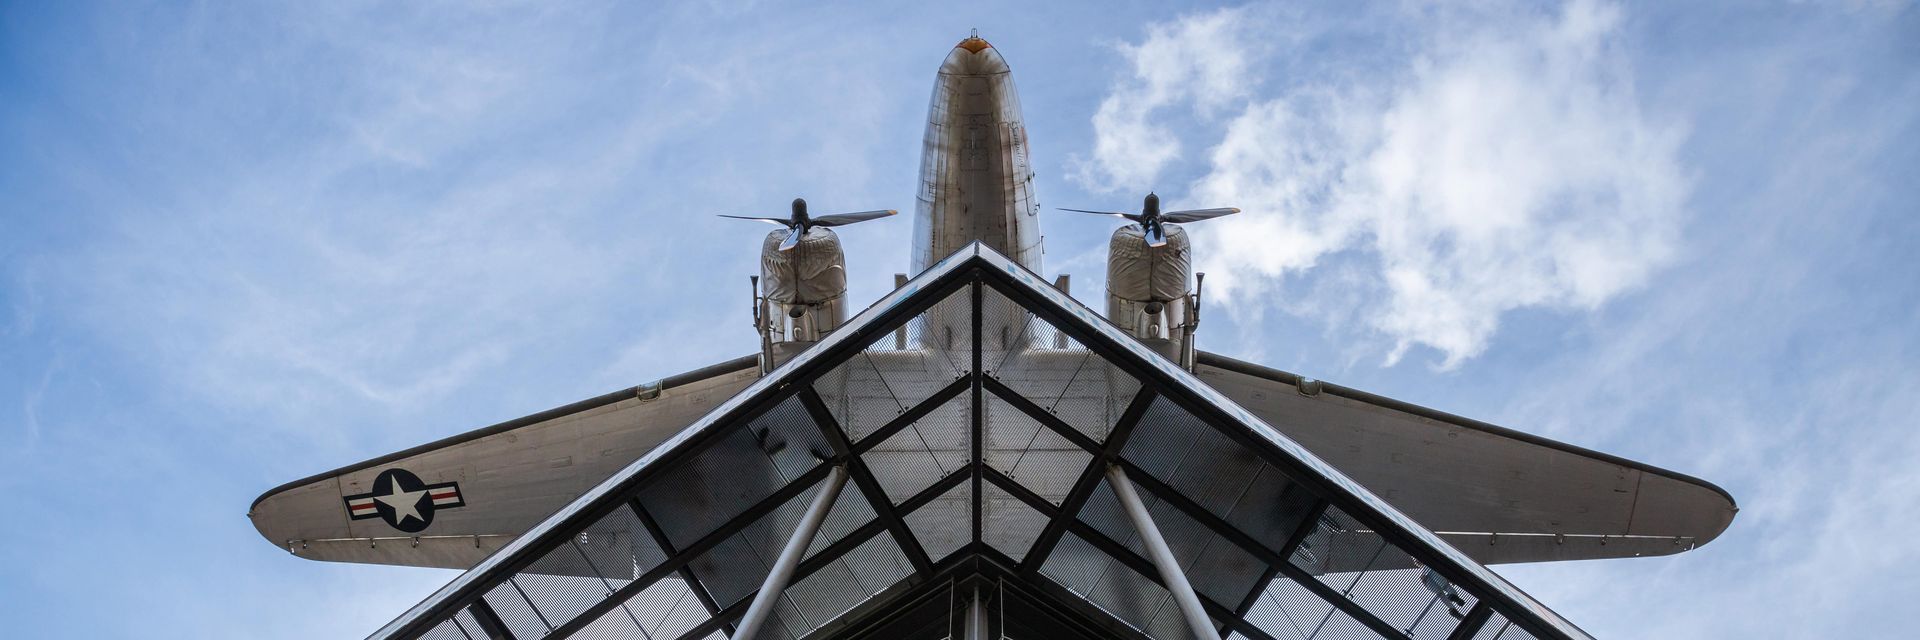 Blick von unten auf einen Neubau mit Glasfassade und Stahlstreben. Darüber hängt ein Flugzeug.